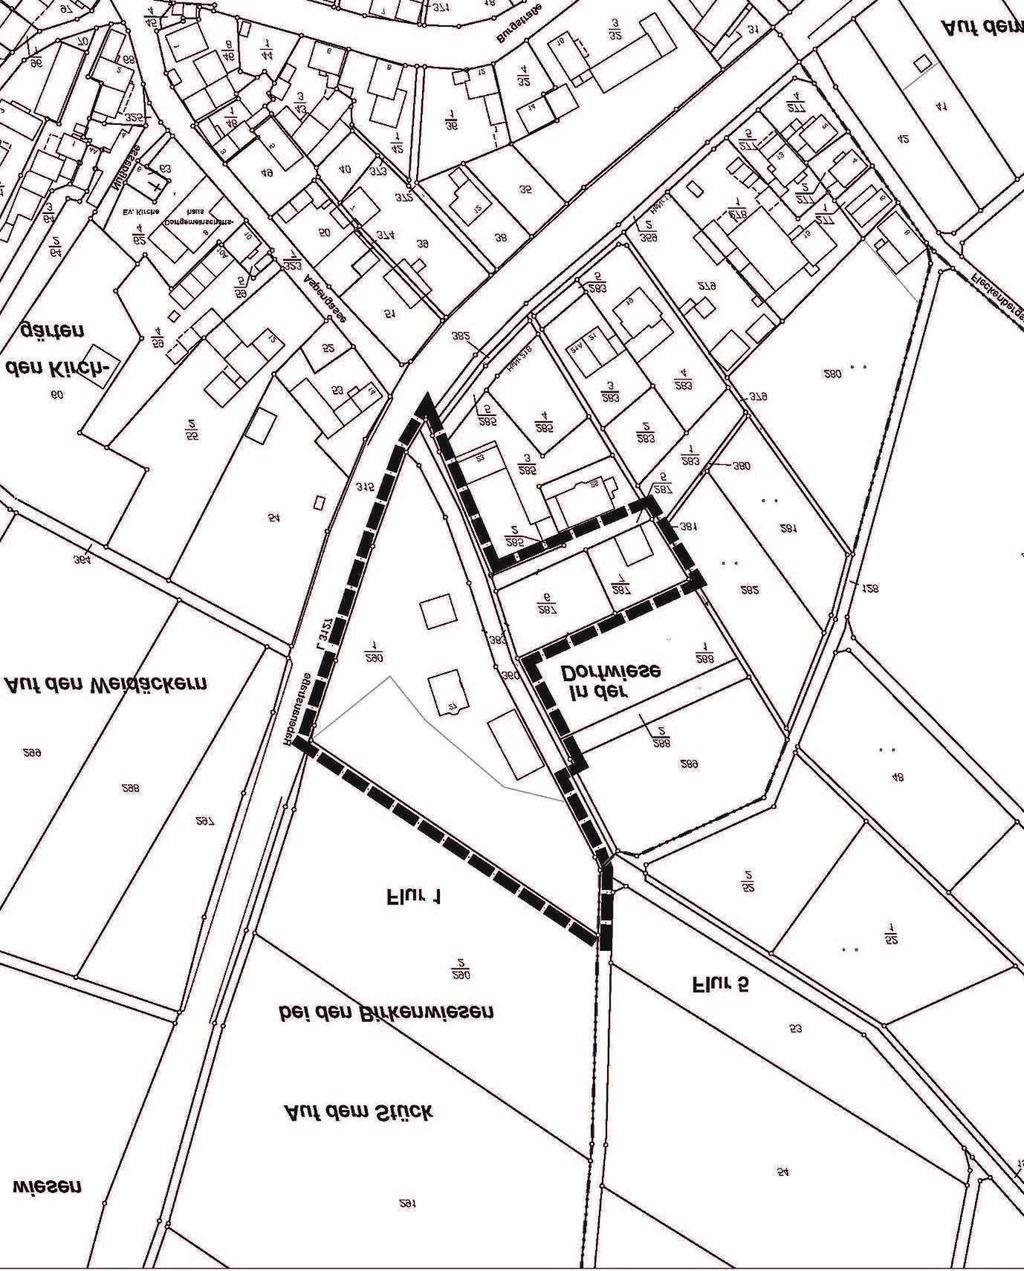 17. November 2016 17 emäß 4b BauGB wurde ein Planungsbüo mit der Durchführung des Verfahrens beuftragt. auleitplanung der Stadt Grünberg, tadtteil Beltershain ebauungsplan Nr.